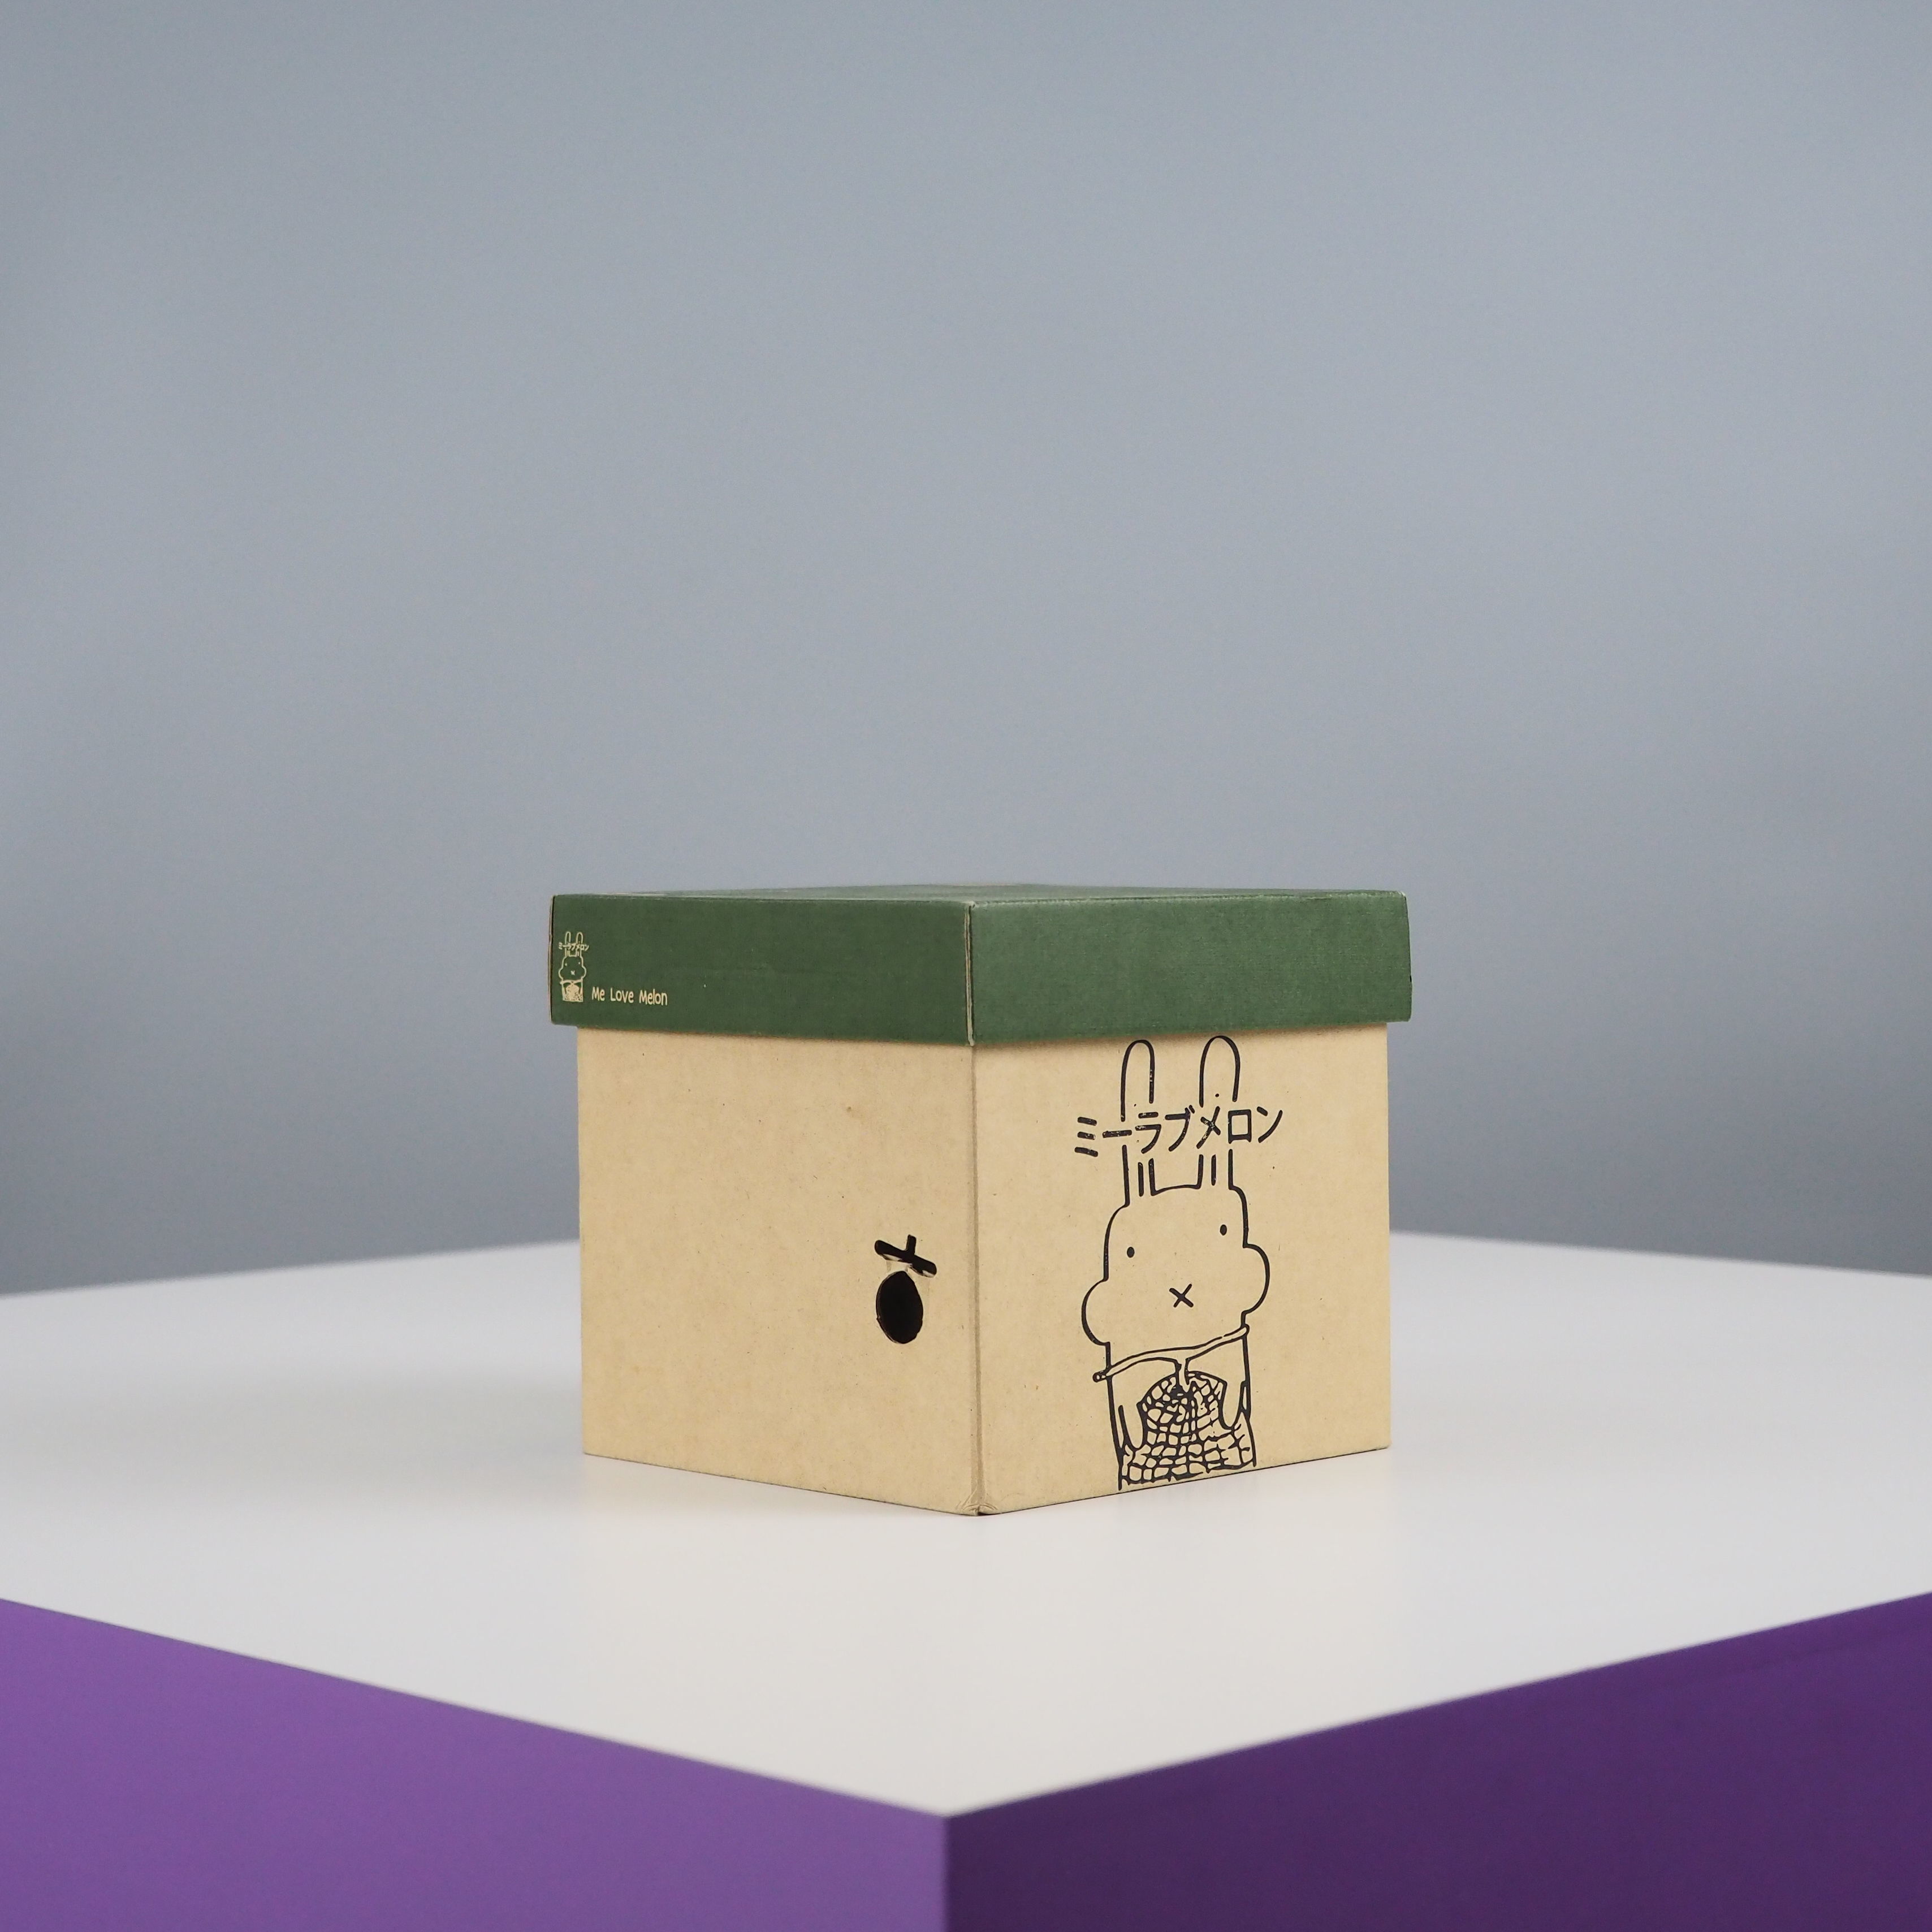 กล่องเมล่อน กล่องเมล่อนแบบฝาครอบ กล่องเมล่อน รูปทรงฝาครอบ สามารถใส่เมล่อนได้ 1 ลูก มีแผ่นรอง Support Box เพื่อล็อคลูกเมล่อนไม่ให้เคลื่อนไหวในกล่อง 